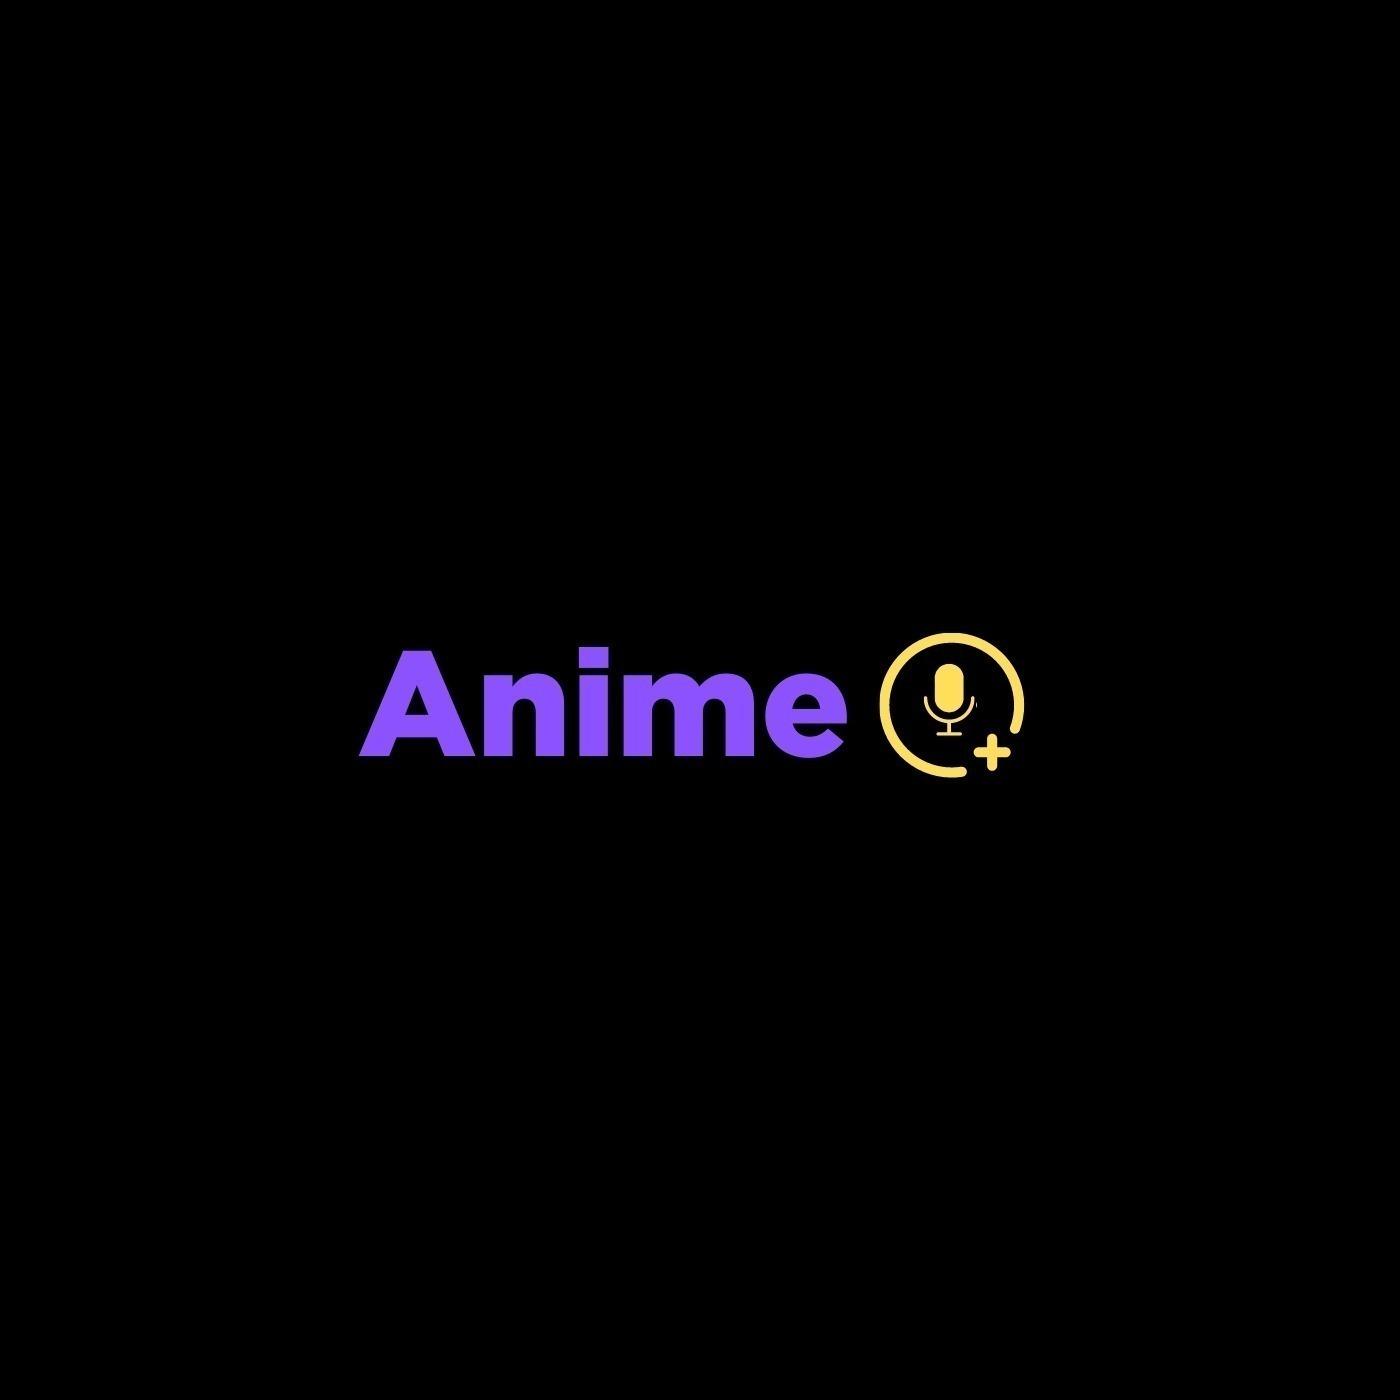 AnimeQ  Seven deadly sins anime, Anime, Seven deadly sins